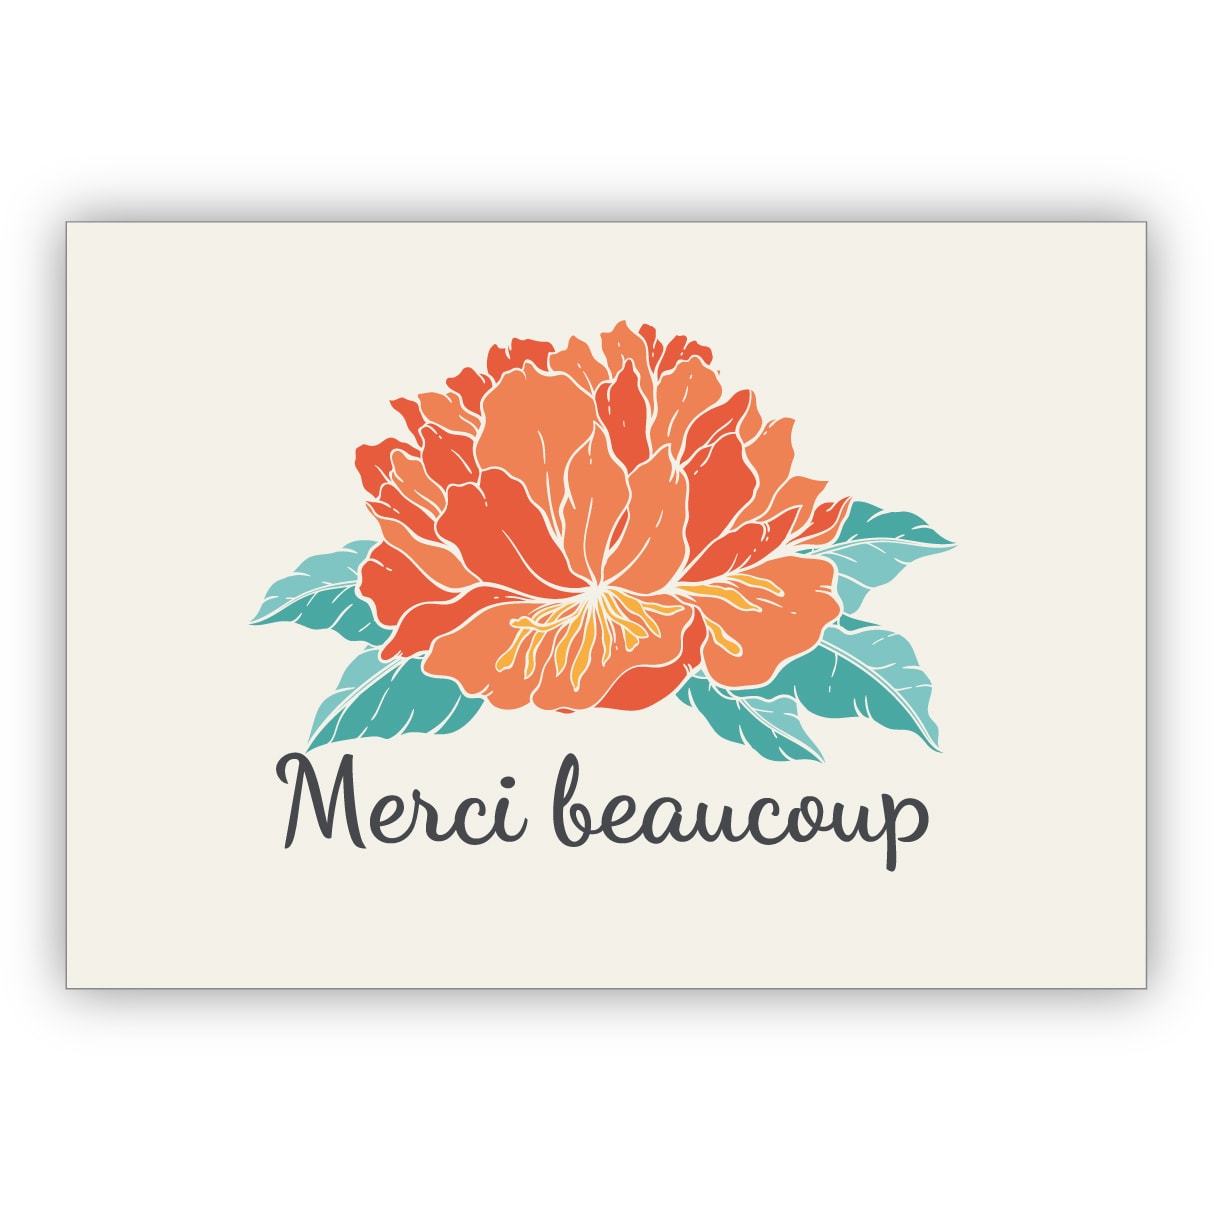 Edle französische Blumen Dankeskarte mit Hibiskusblüte, beige: Merci beaucoup